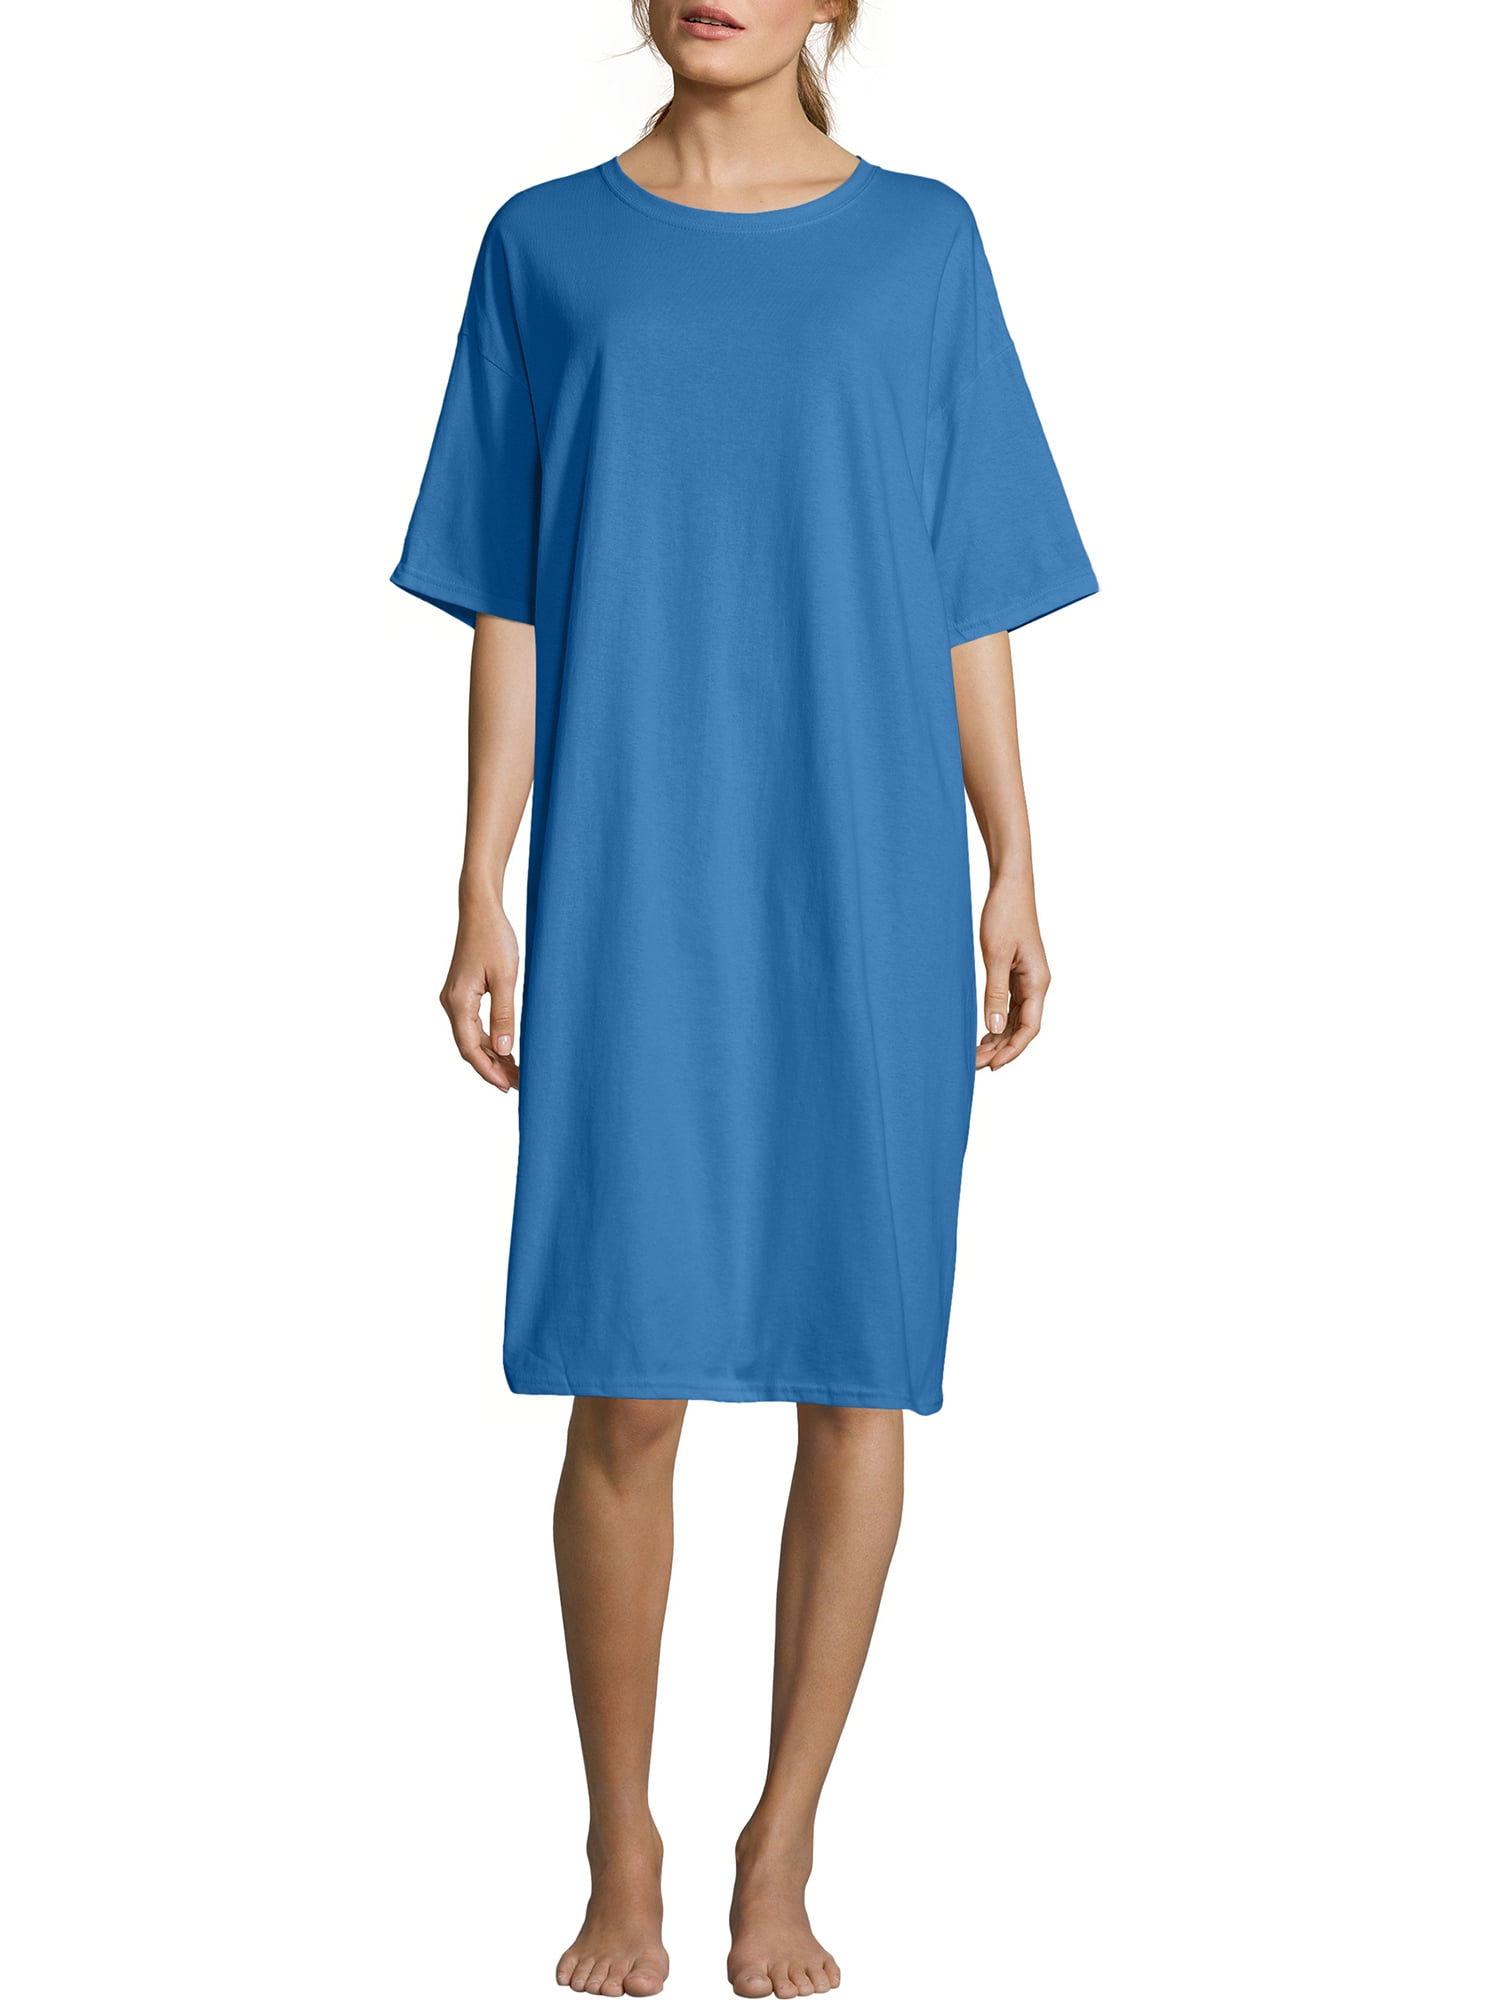 Hanes - Women's Cotton Wear-Around Crew Neck T-shirt - Walmart.com